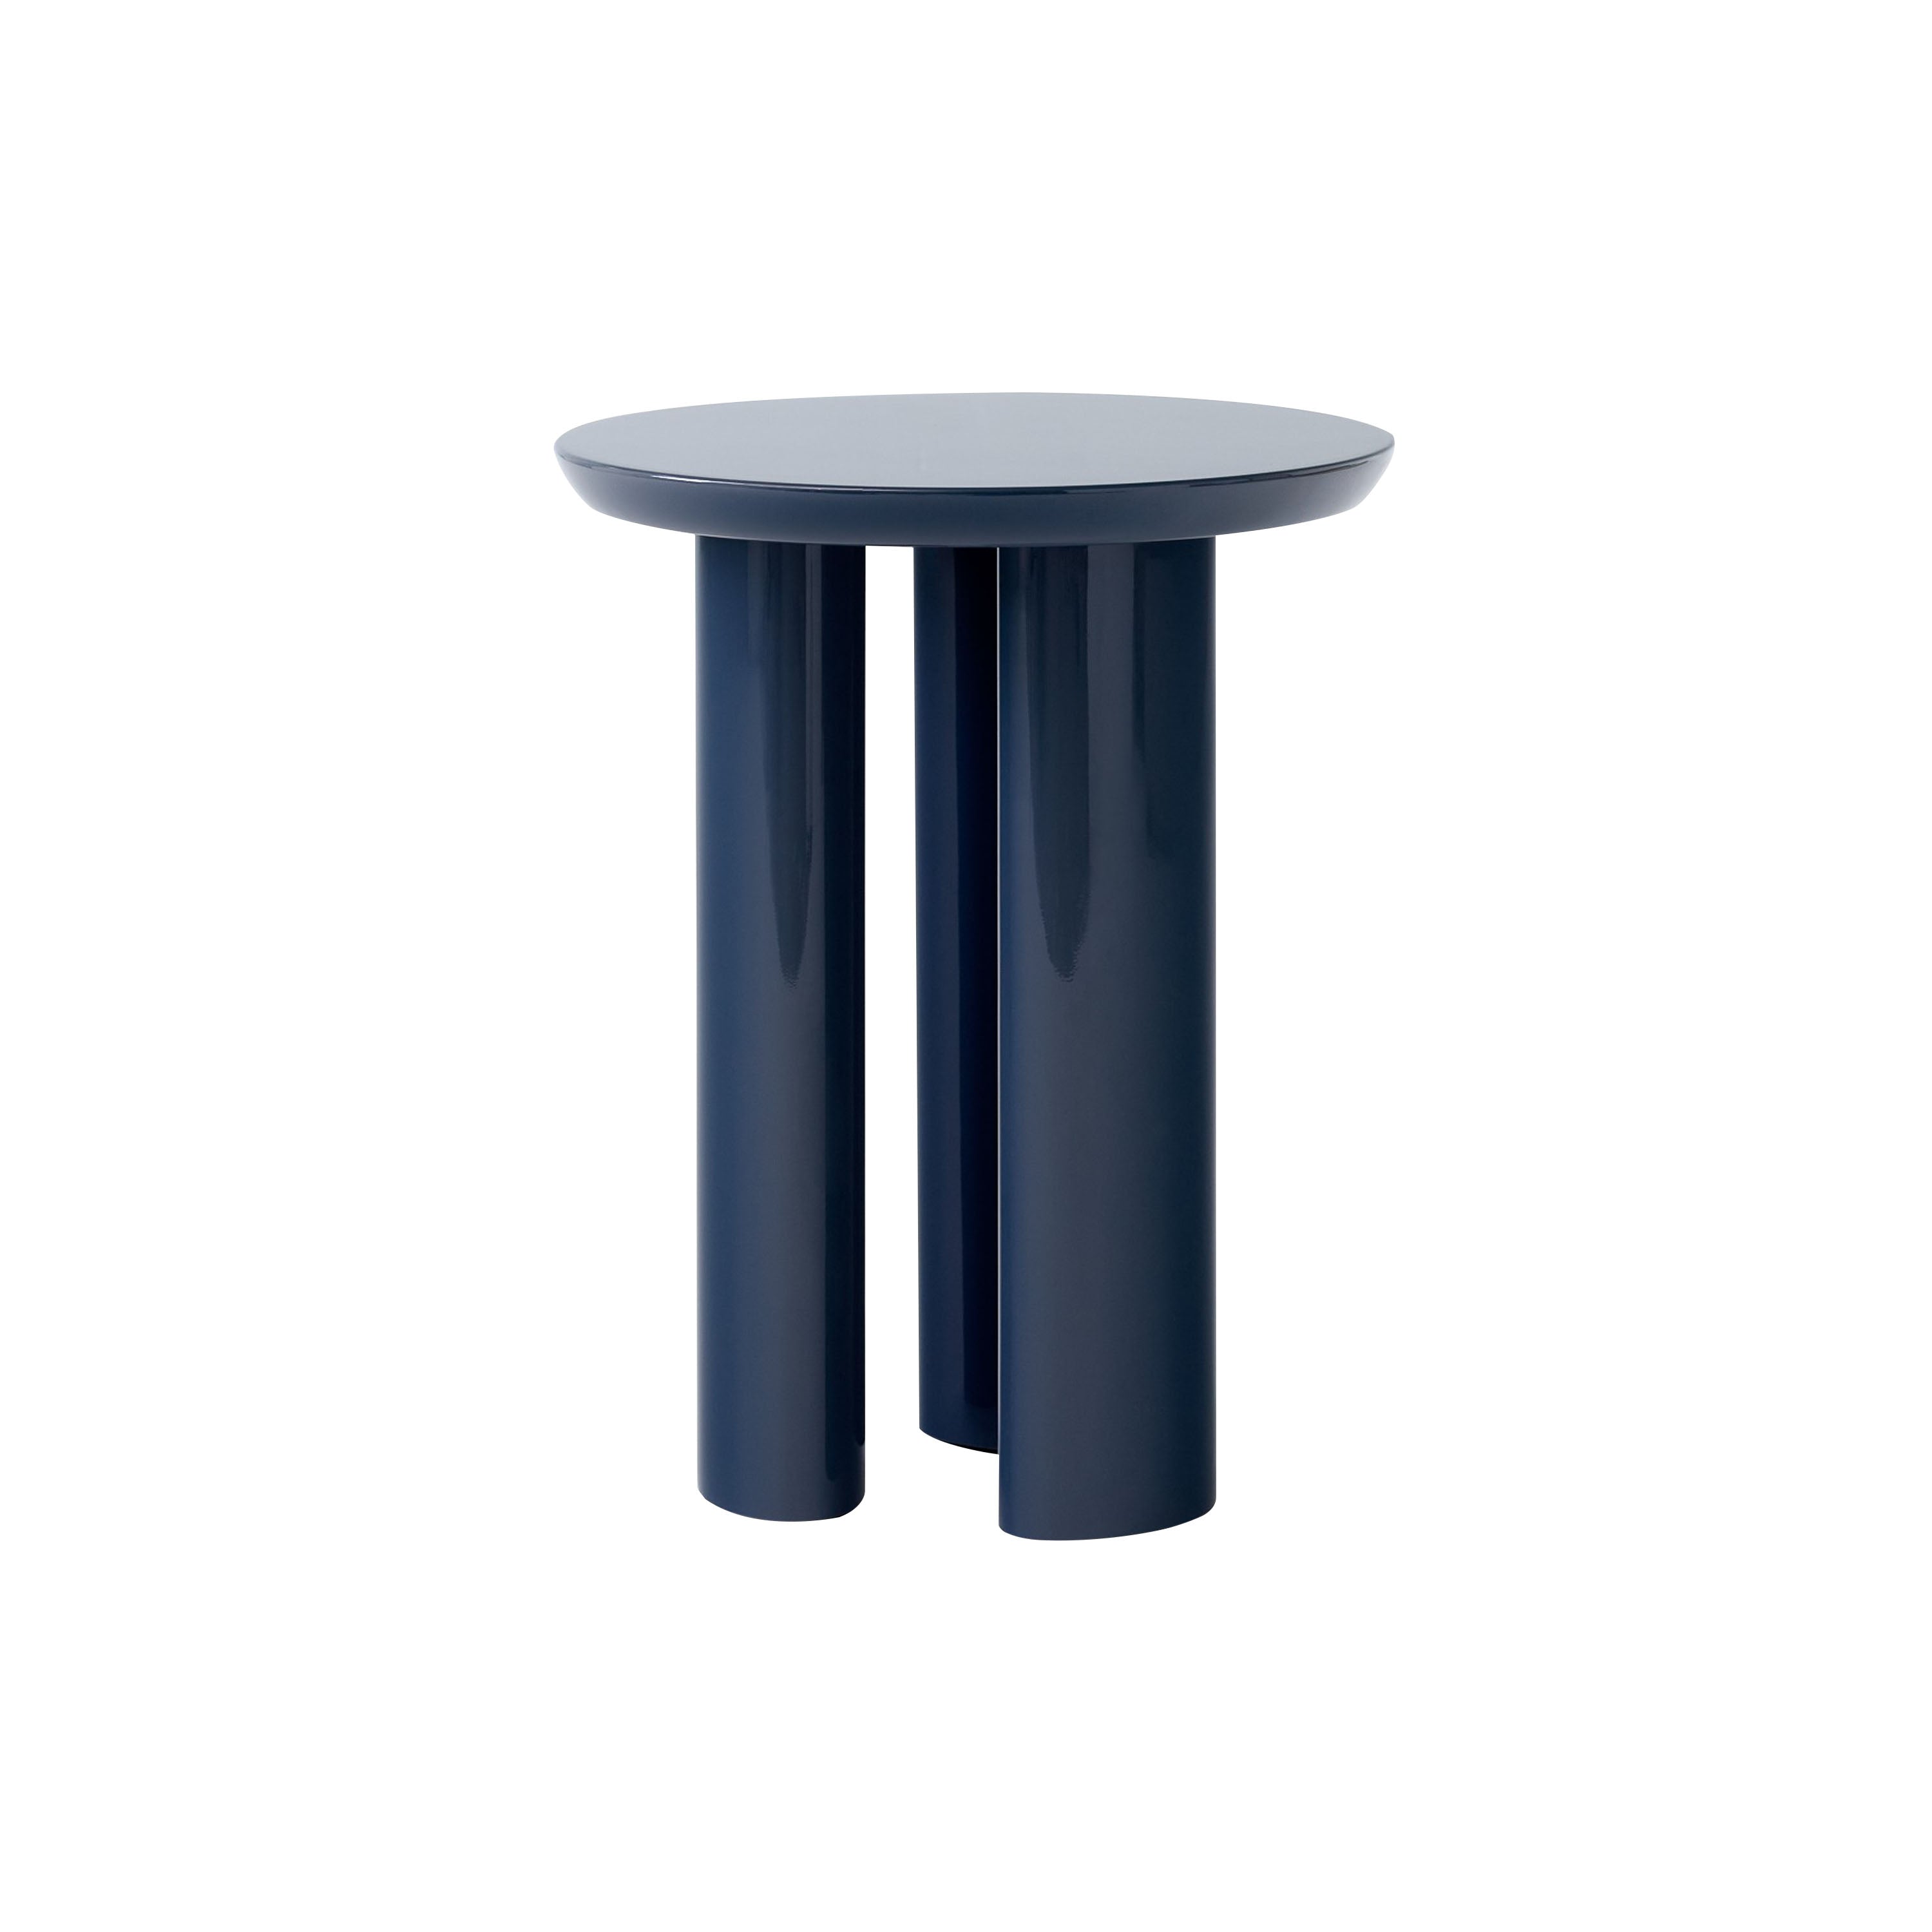 Tung Side Table JA3: Steel Blue